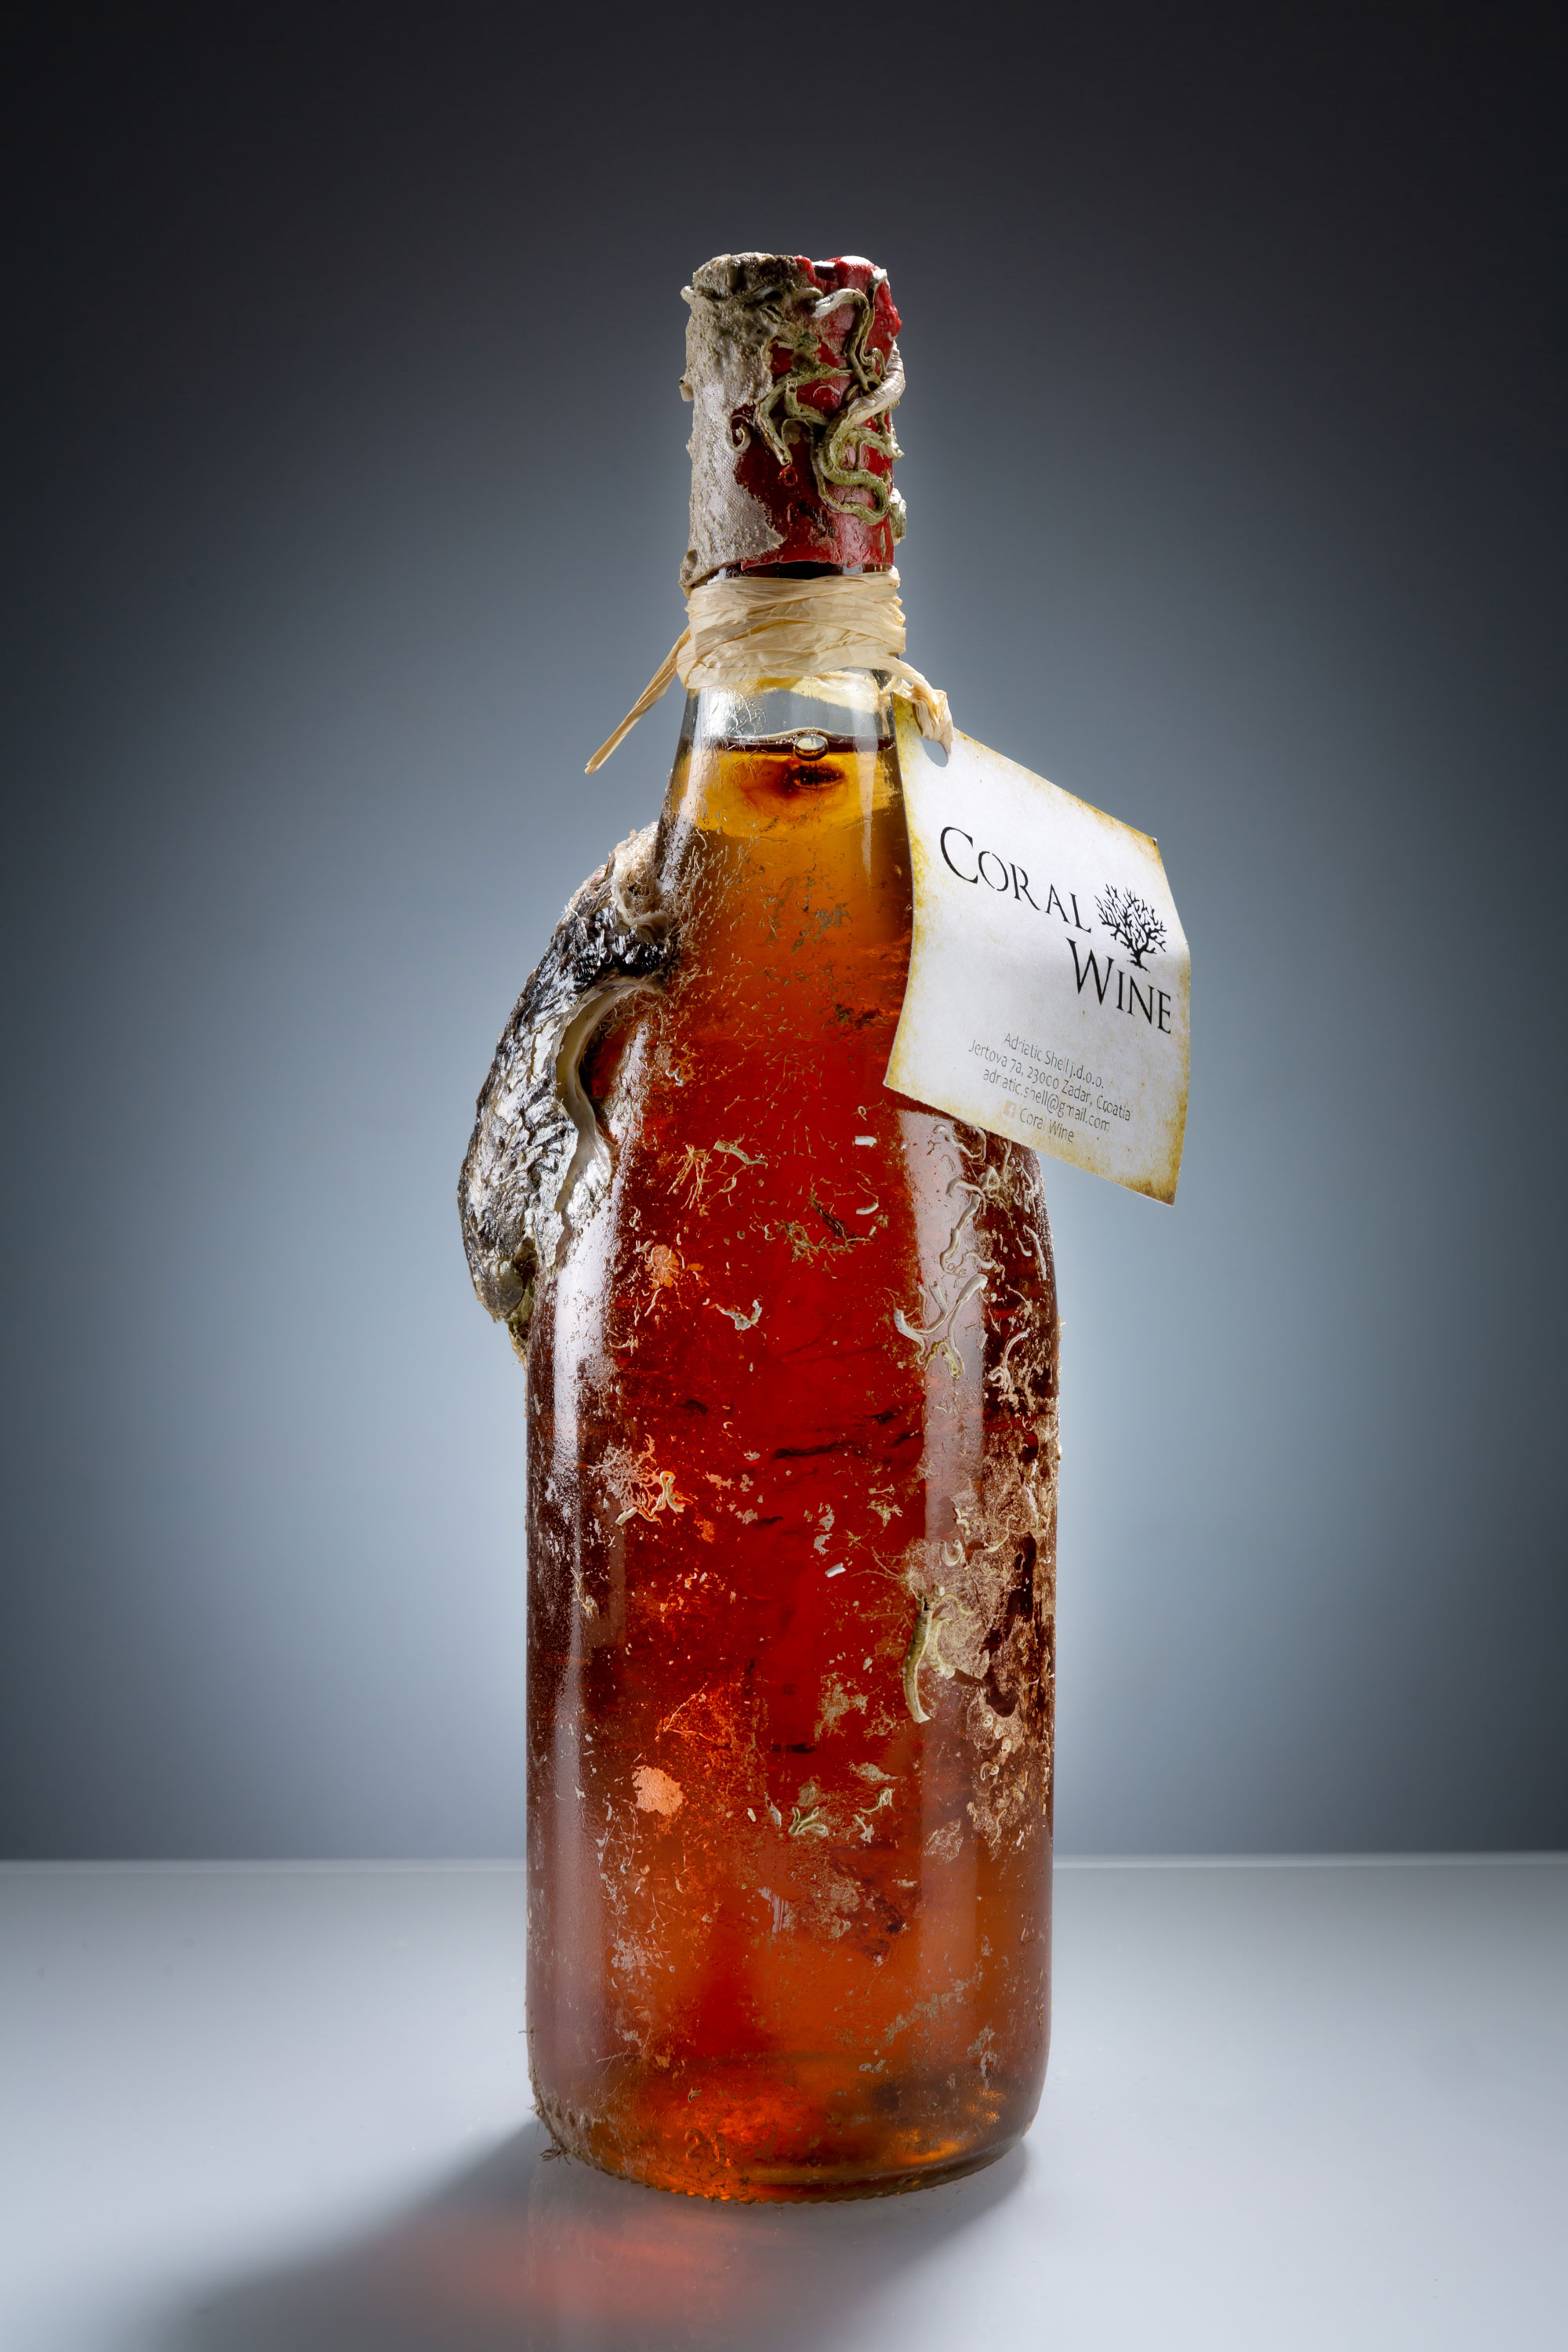 Coral Wine Rose Merlot Jahrgang 2011 0,75l (14,5% Vol) - Rosewein mit echten Korallen- [Enthält Sulfite]